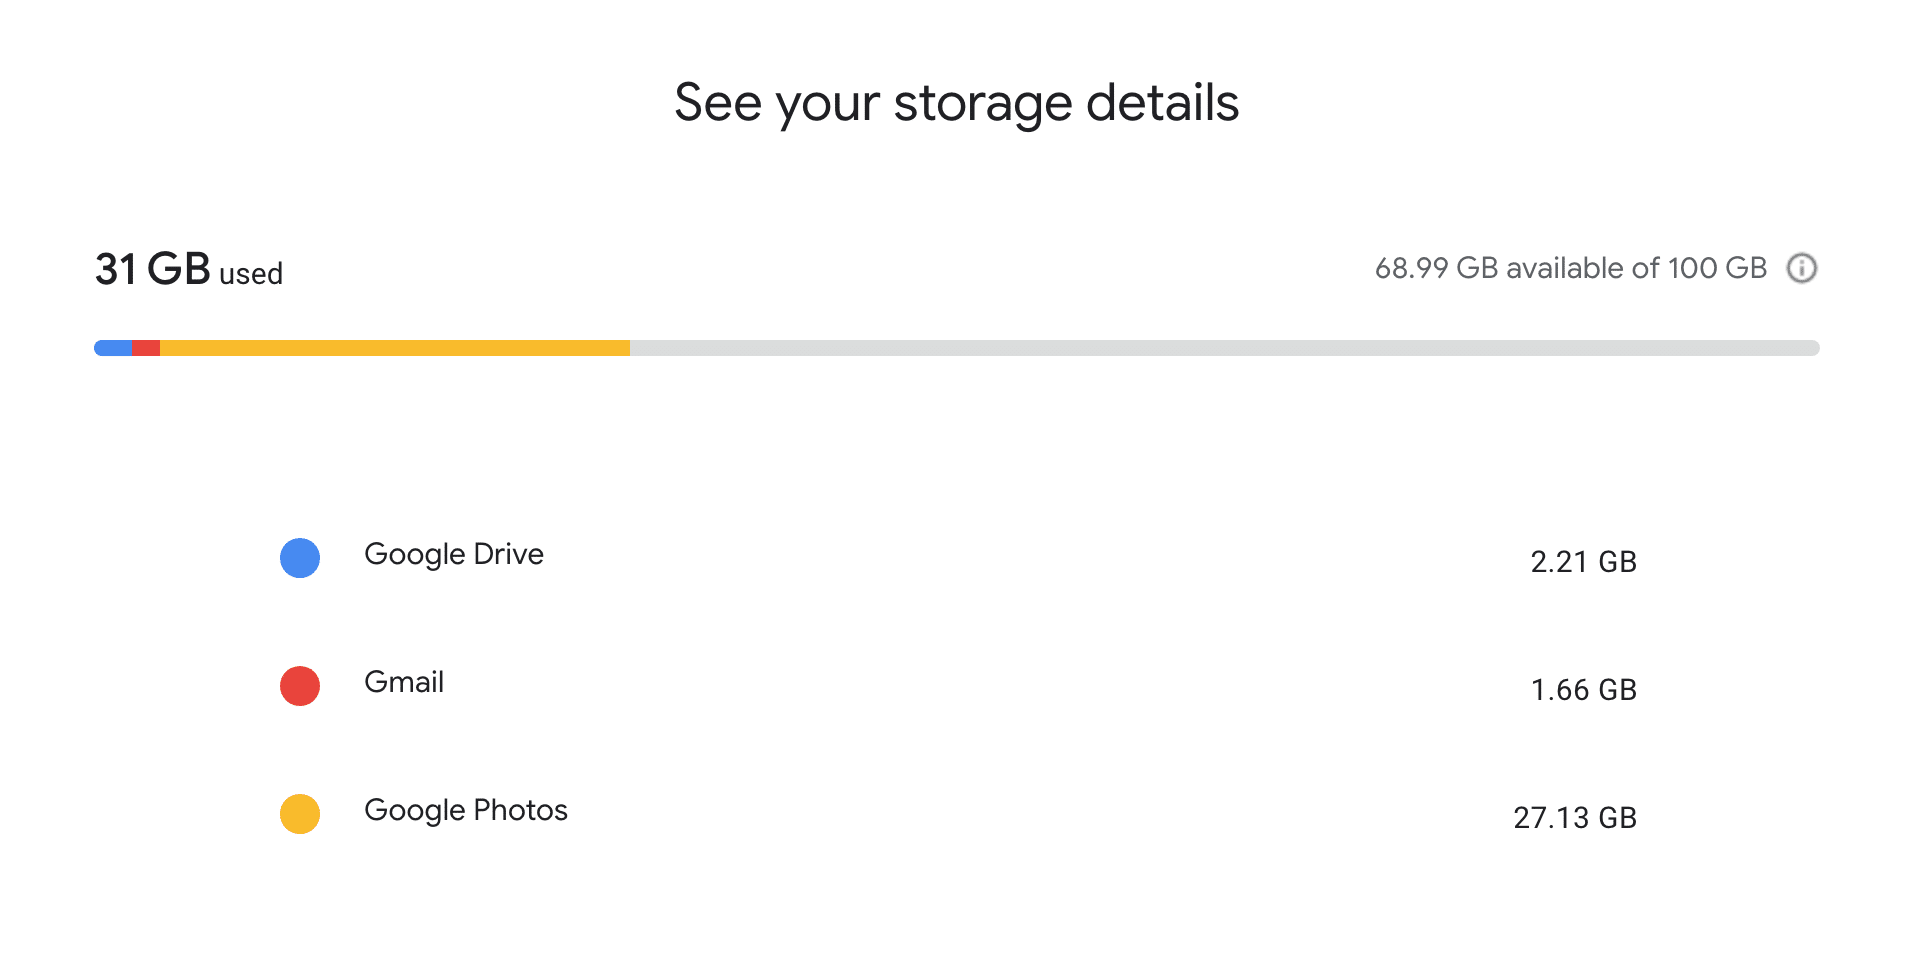 Google Drive: See storage breakdown